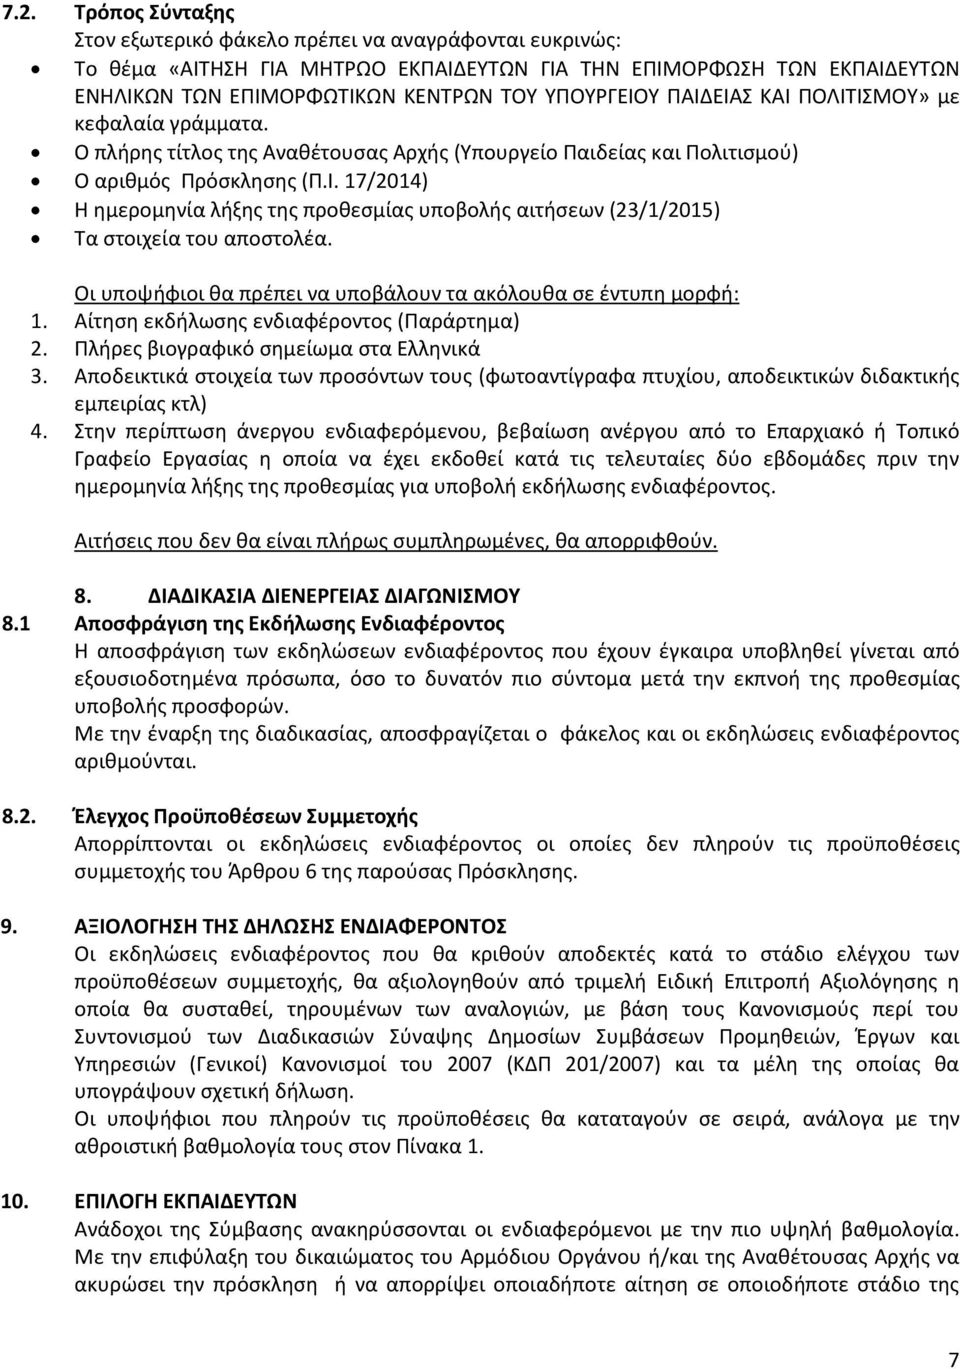 Οι υποψήφιοι θα πρέπει να υποβάλουν τα ακόλουθα σε έντυπη μορφή: 1. Αίτηση εκδήλωσης ενδιαφέροντος (Παράρτημα) 2. Πλήρες βιογραφικό σημείωμα στα Ελληνικά 3.